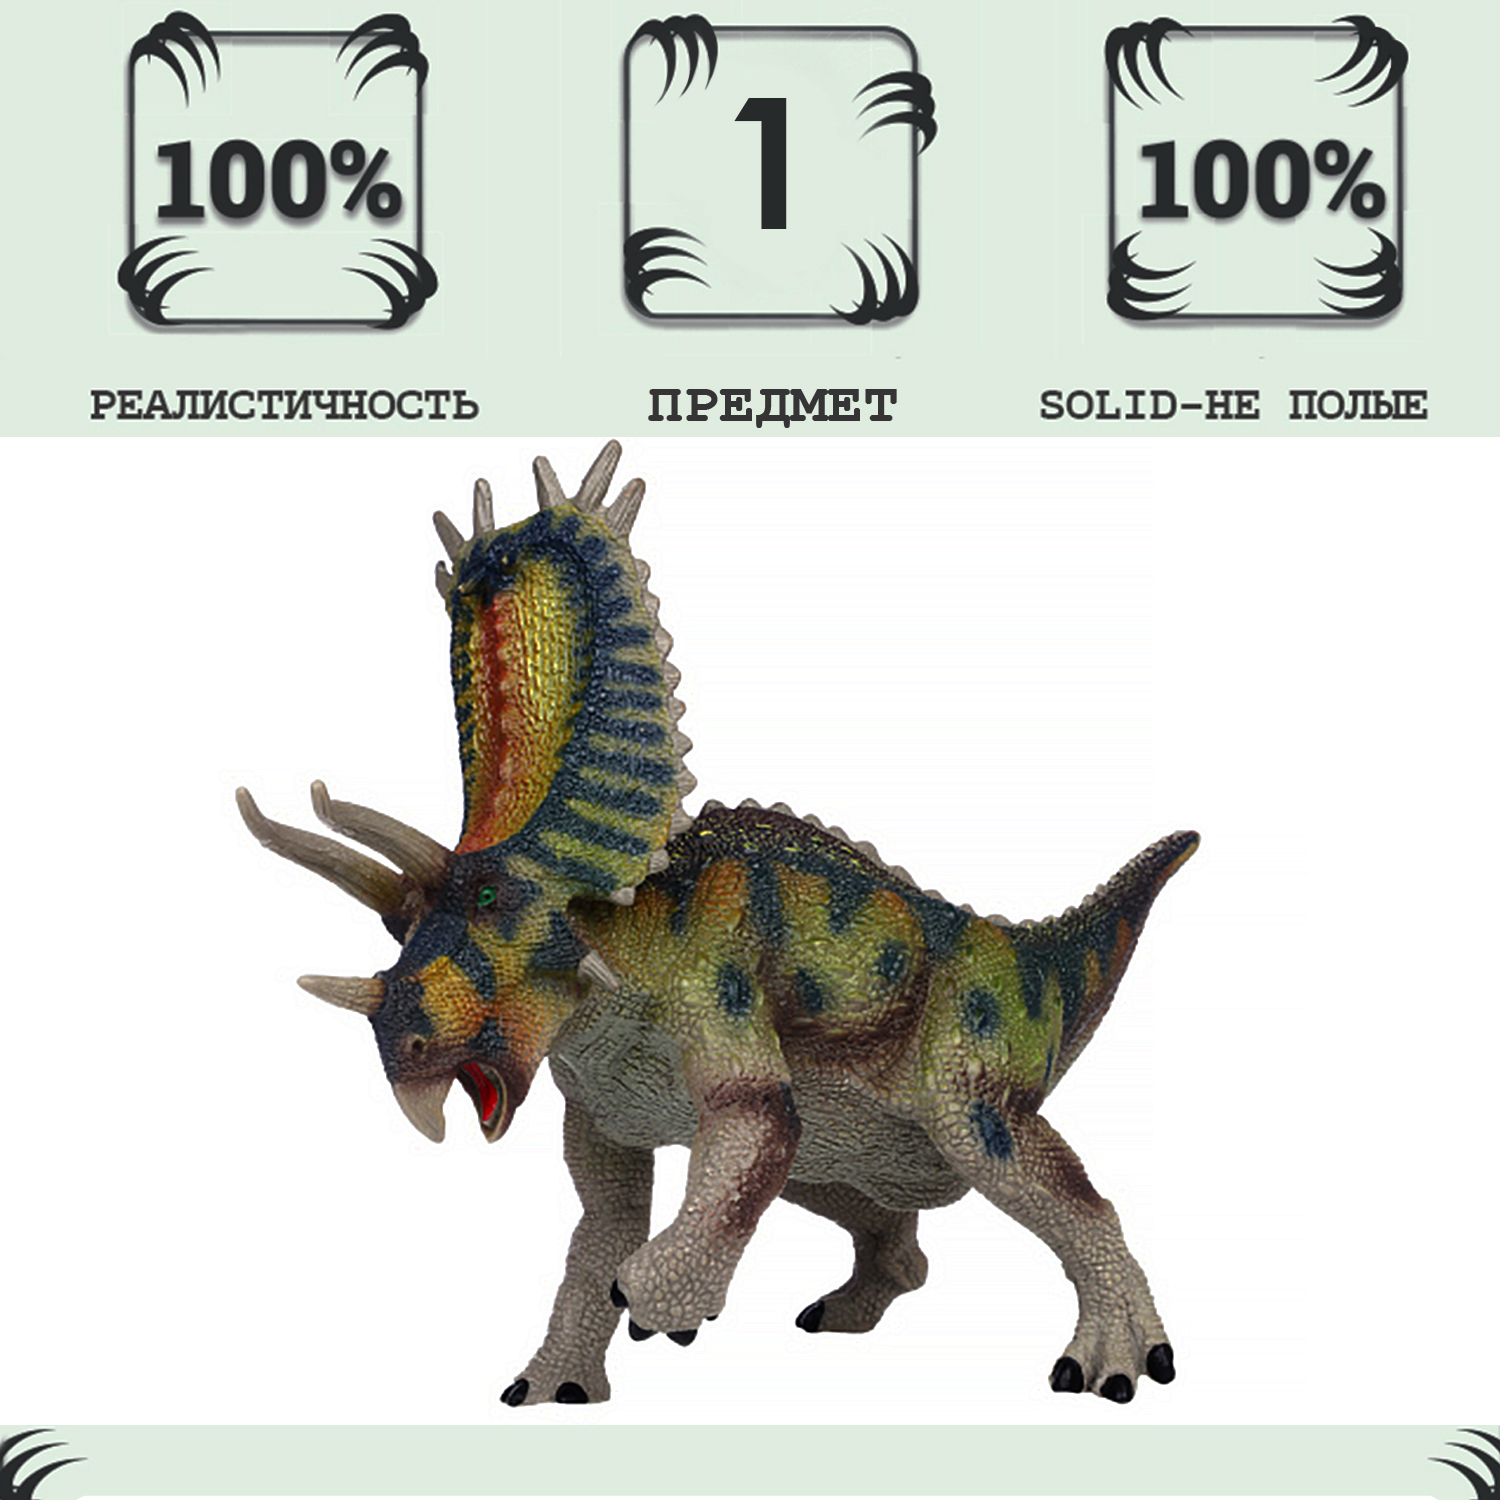 Игрушка динозавр серии Мир динозавров Masai Mara Пентацератопс MM216-088